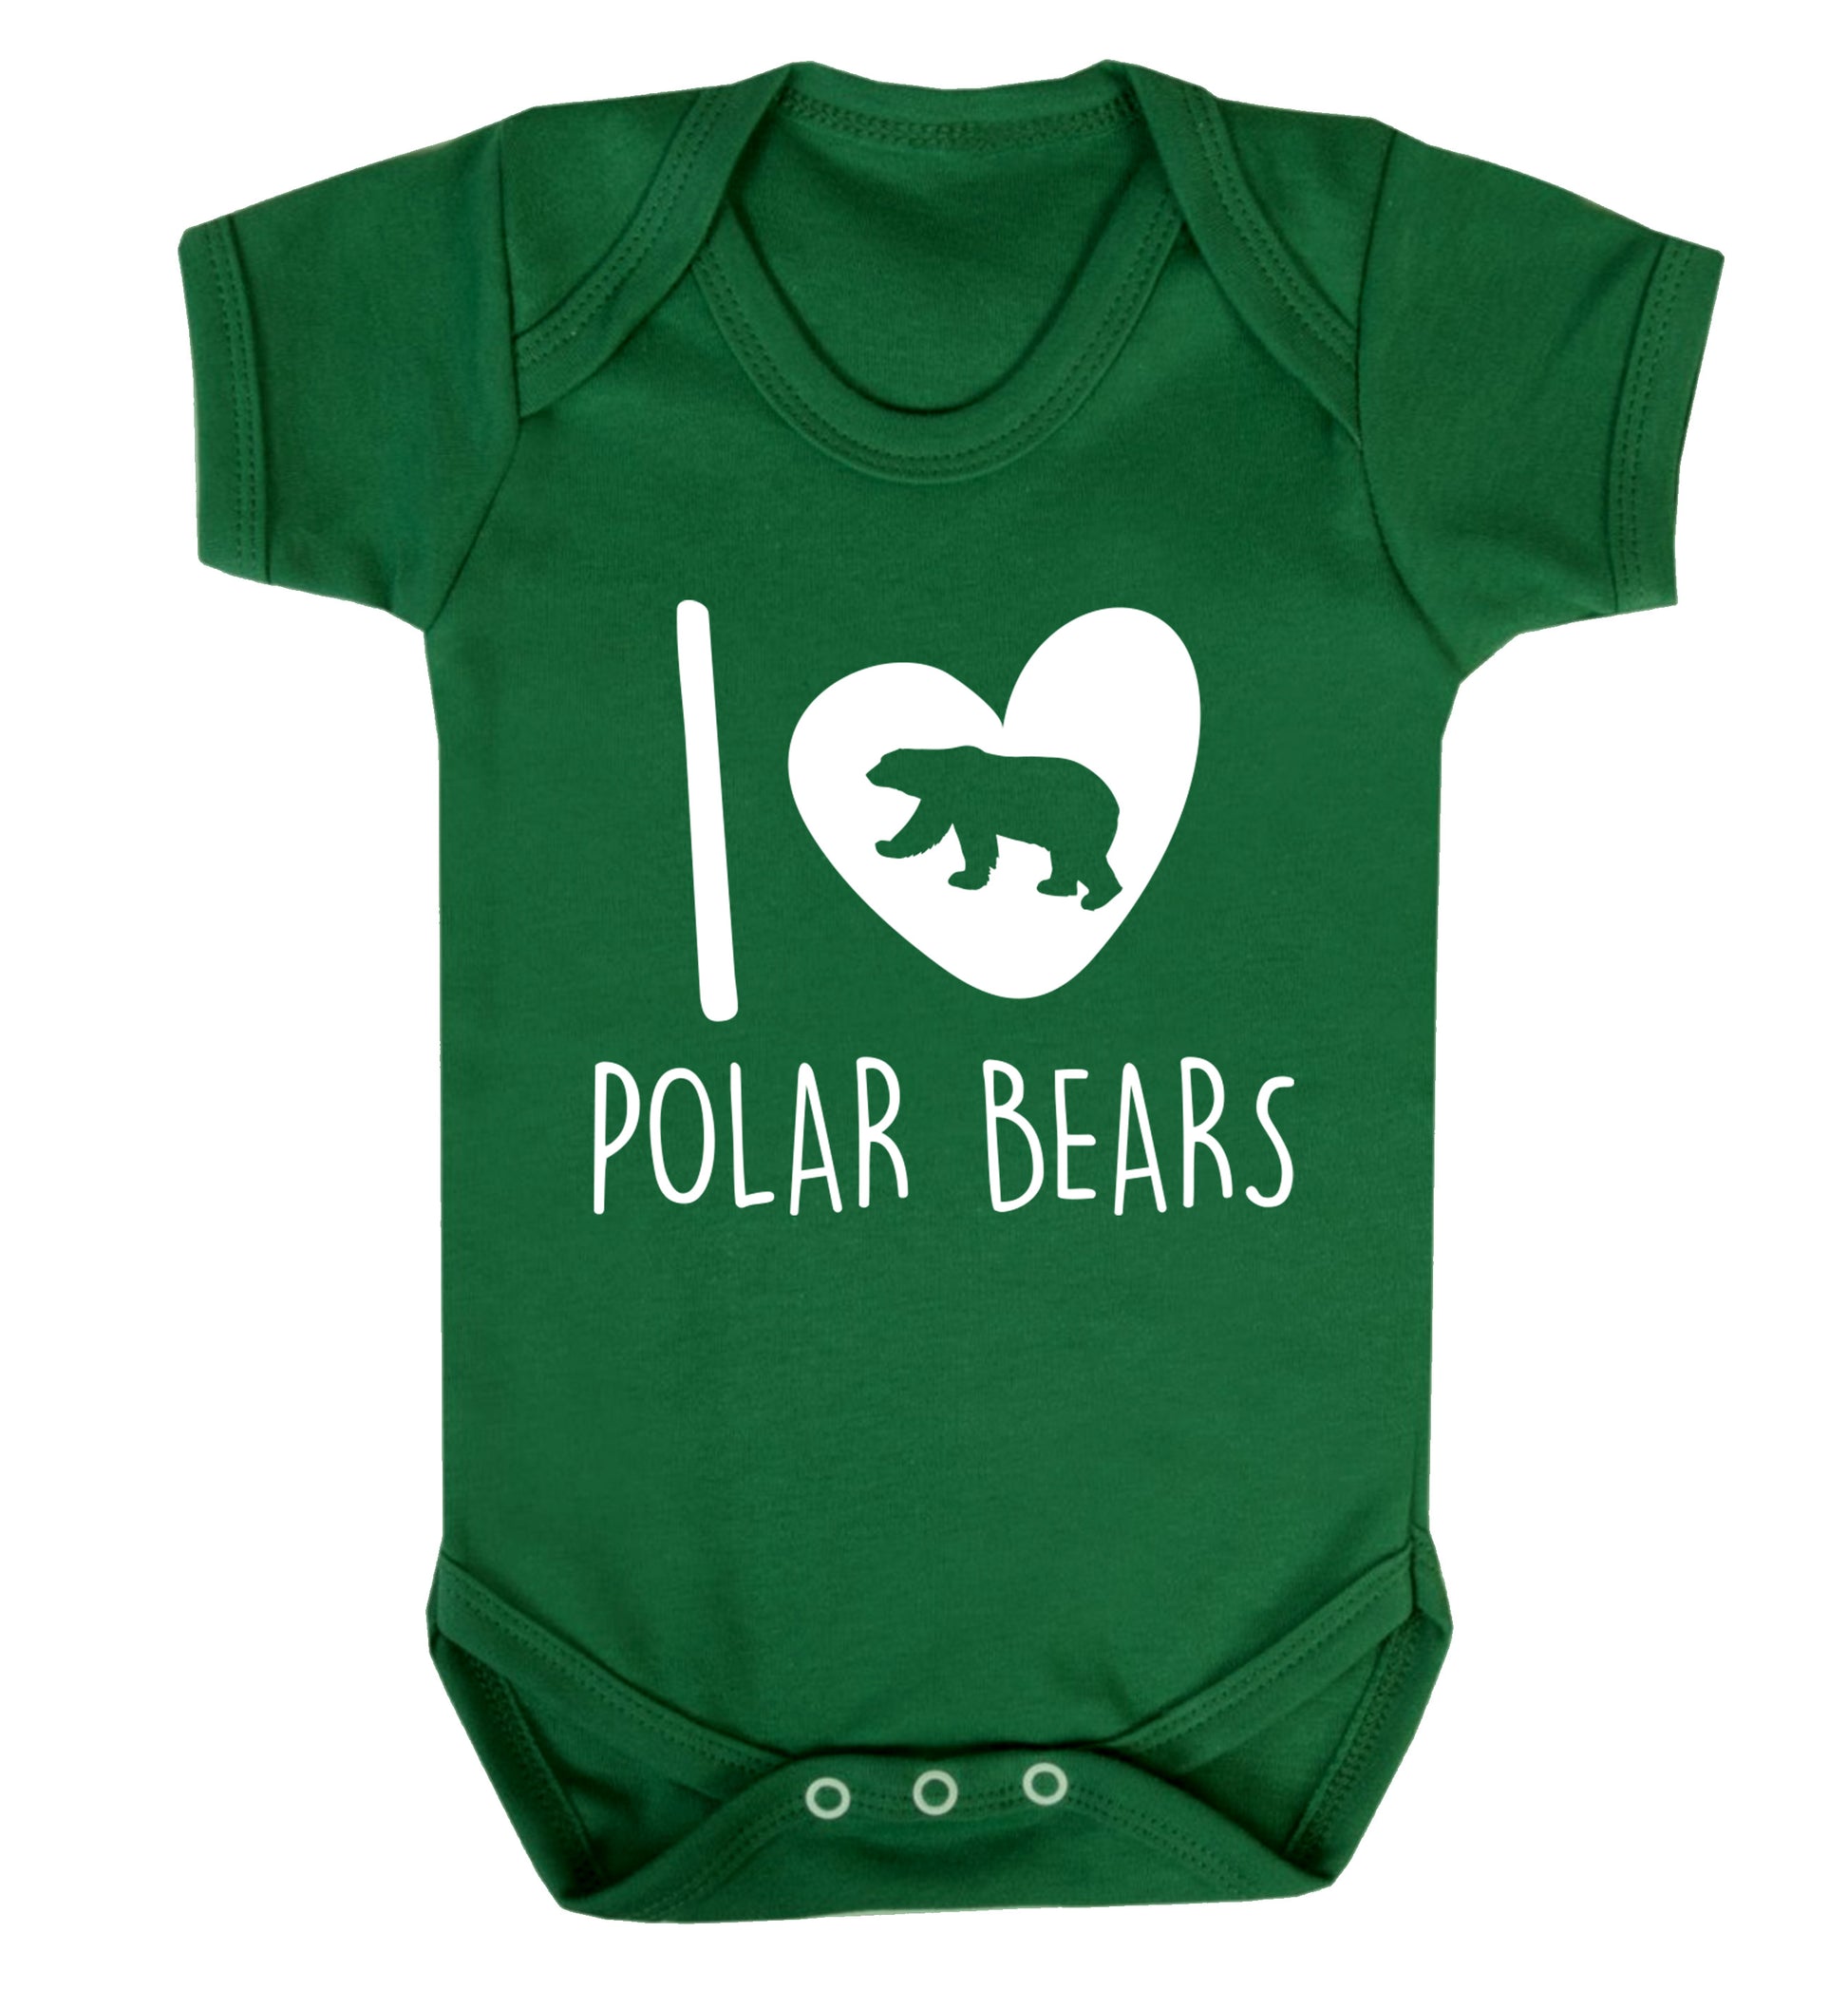 I Love Polar Bears Baby Vest green 18-24 months